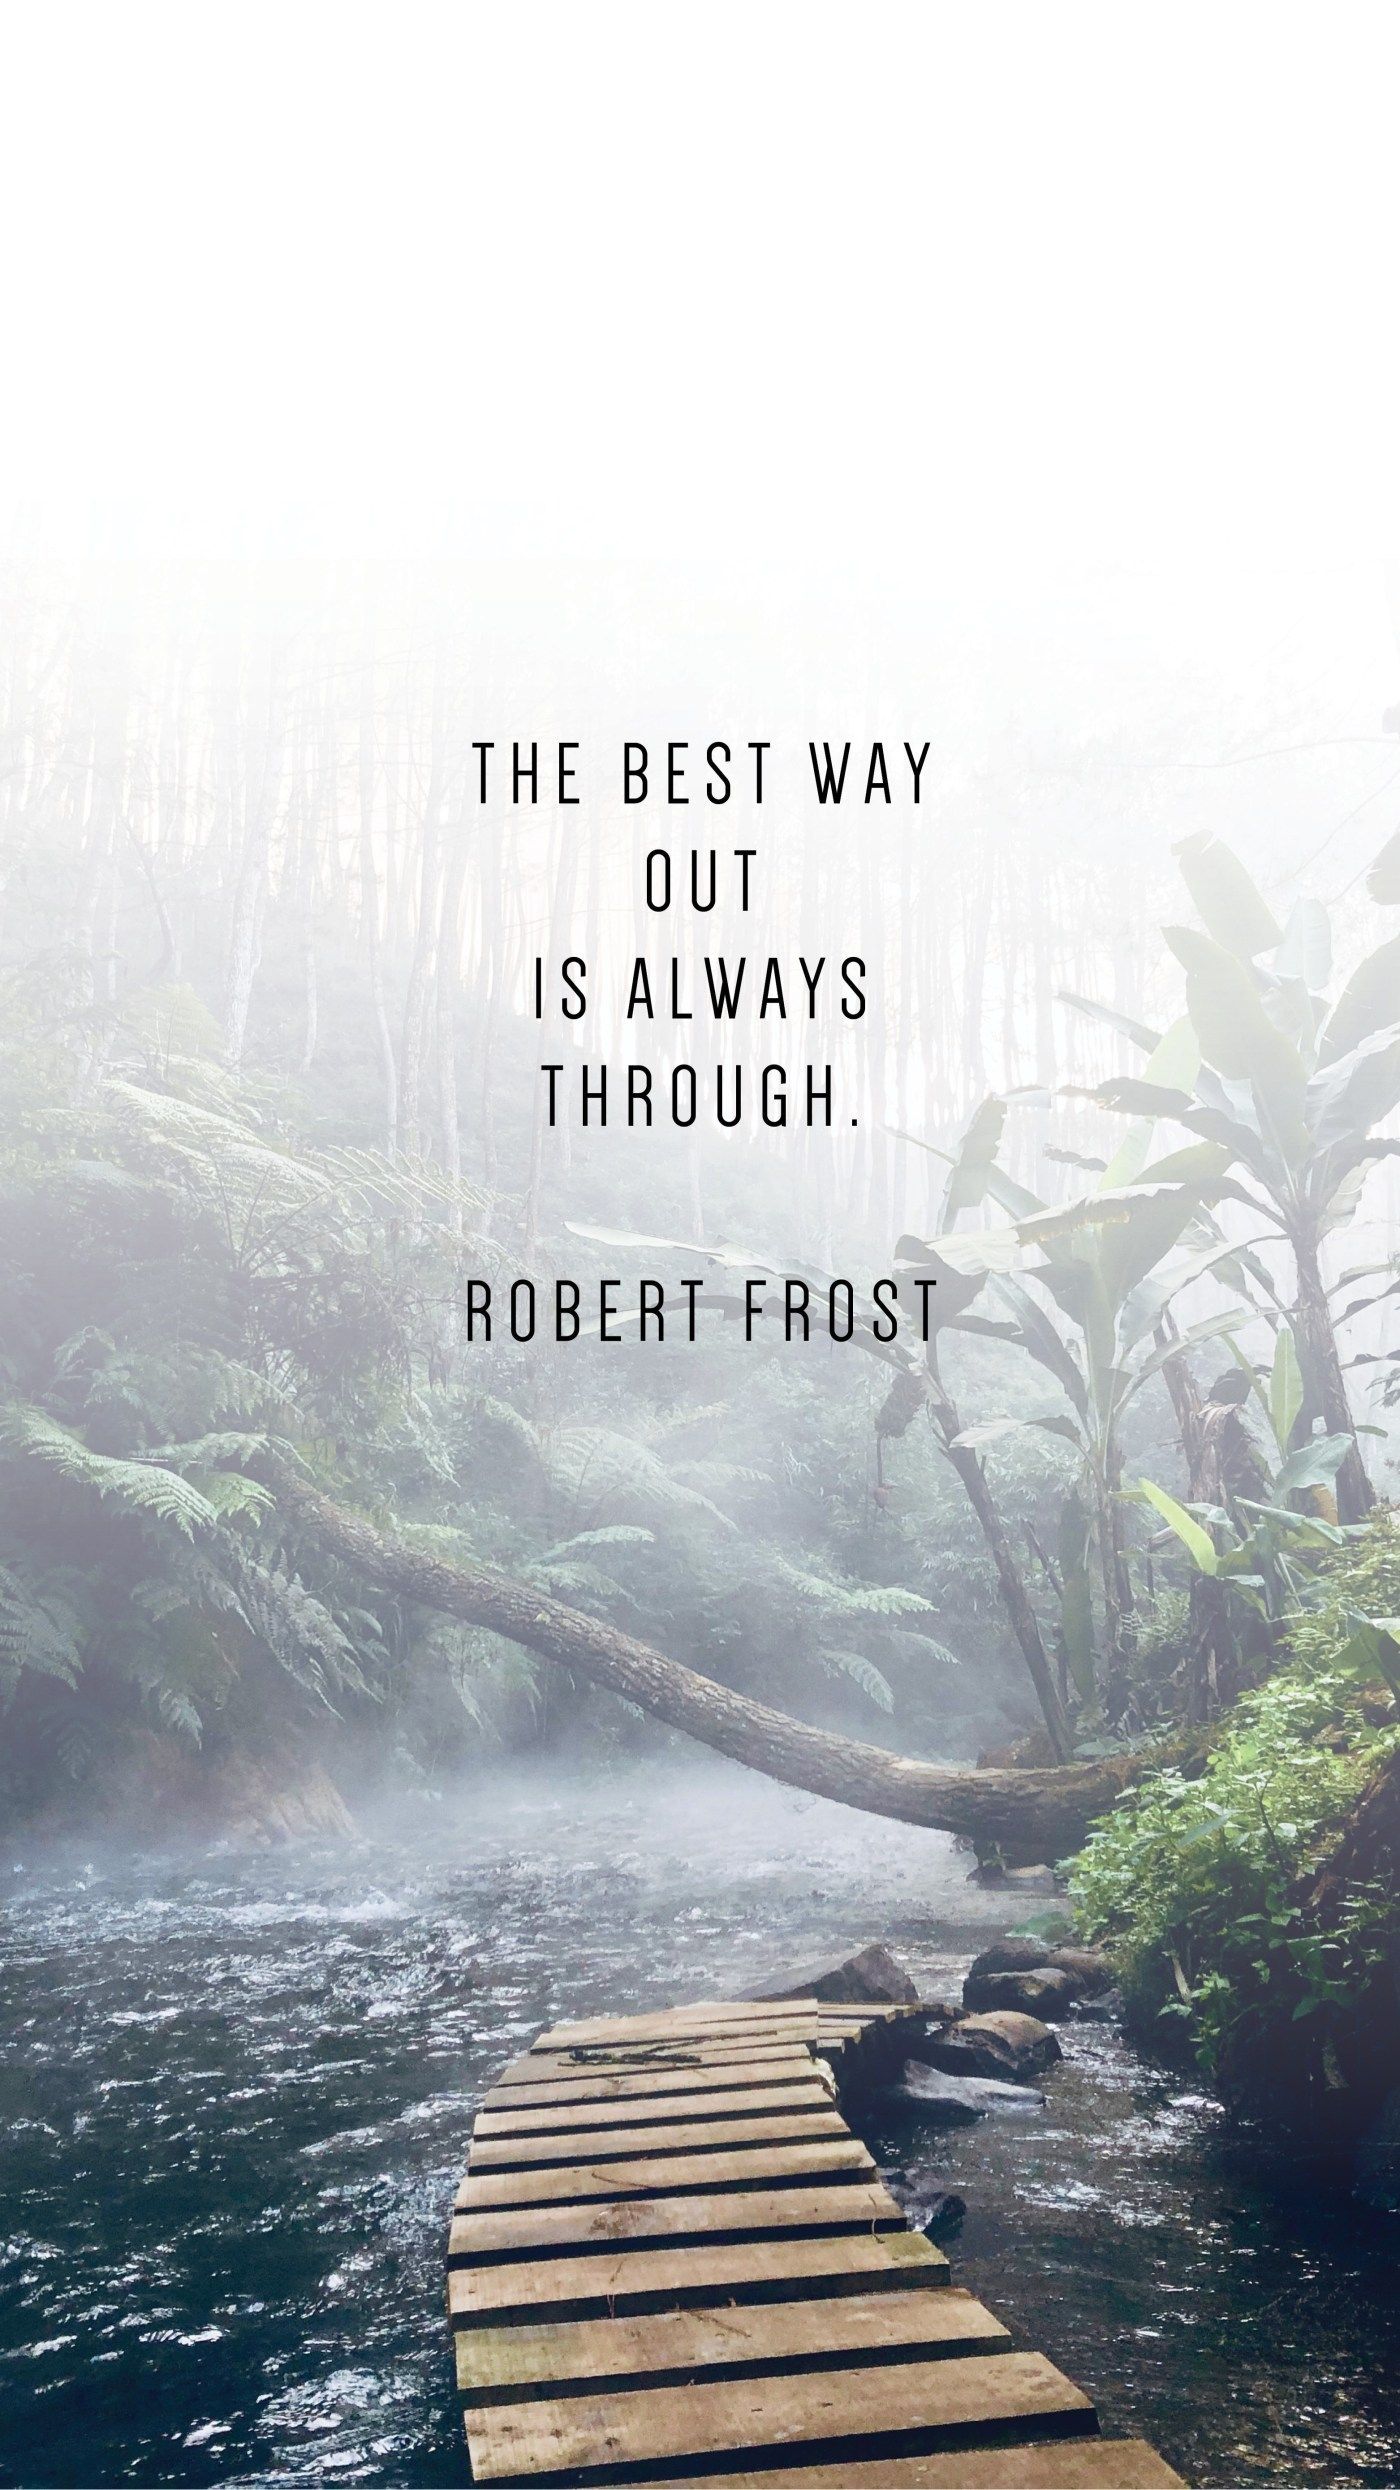 Robert frost quotes, Phone wallpaper .com